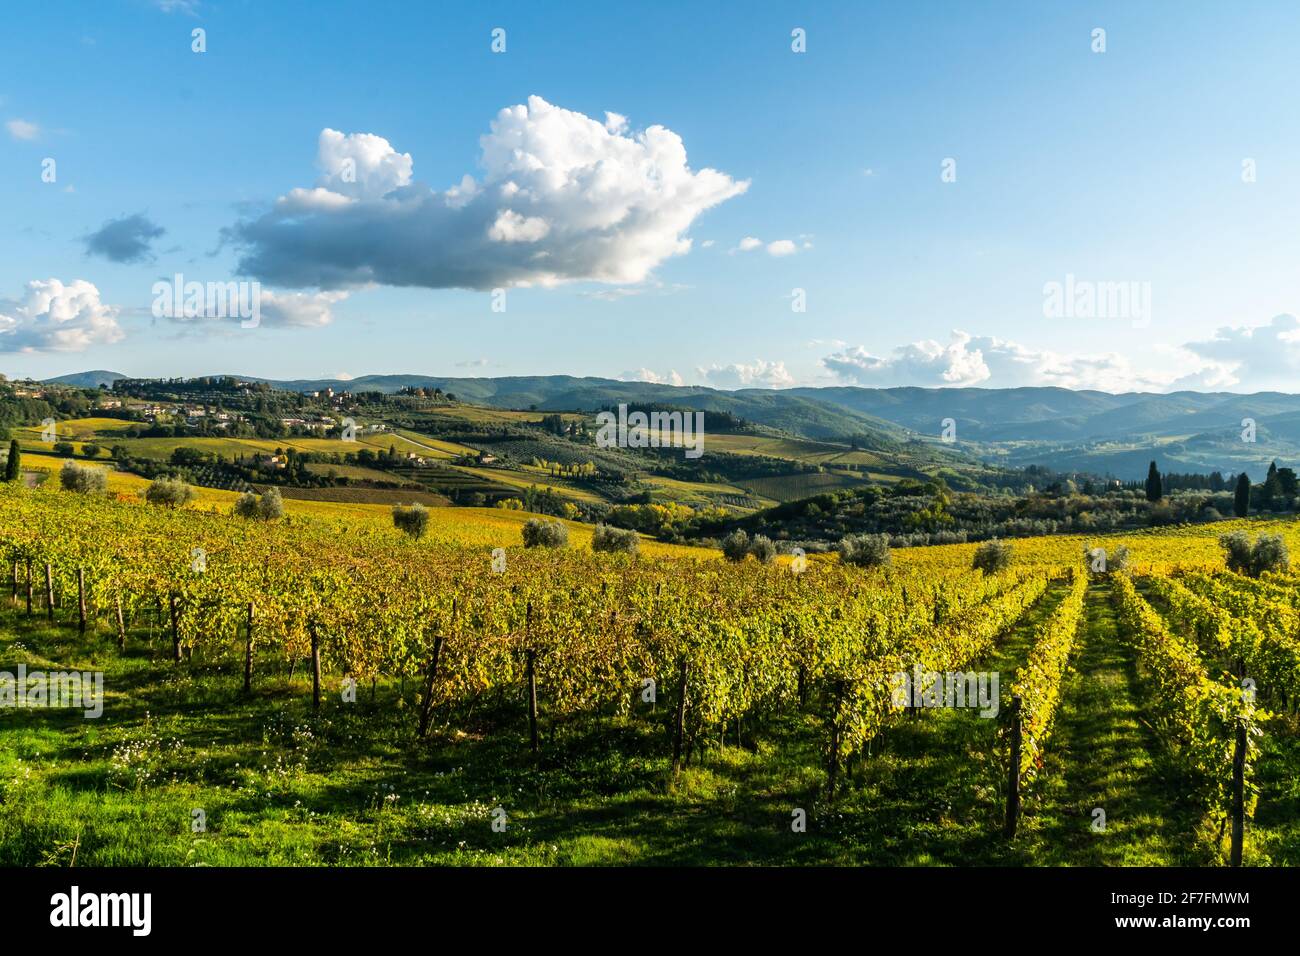 Vue sur la vallée de Panzano in Chianti, lignes de vignes à motifs, cyprès et oliviers avec fermes, Toscane, Italie, Europe Banque D'Images